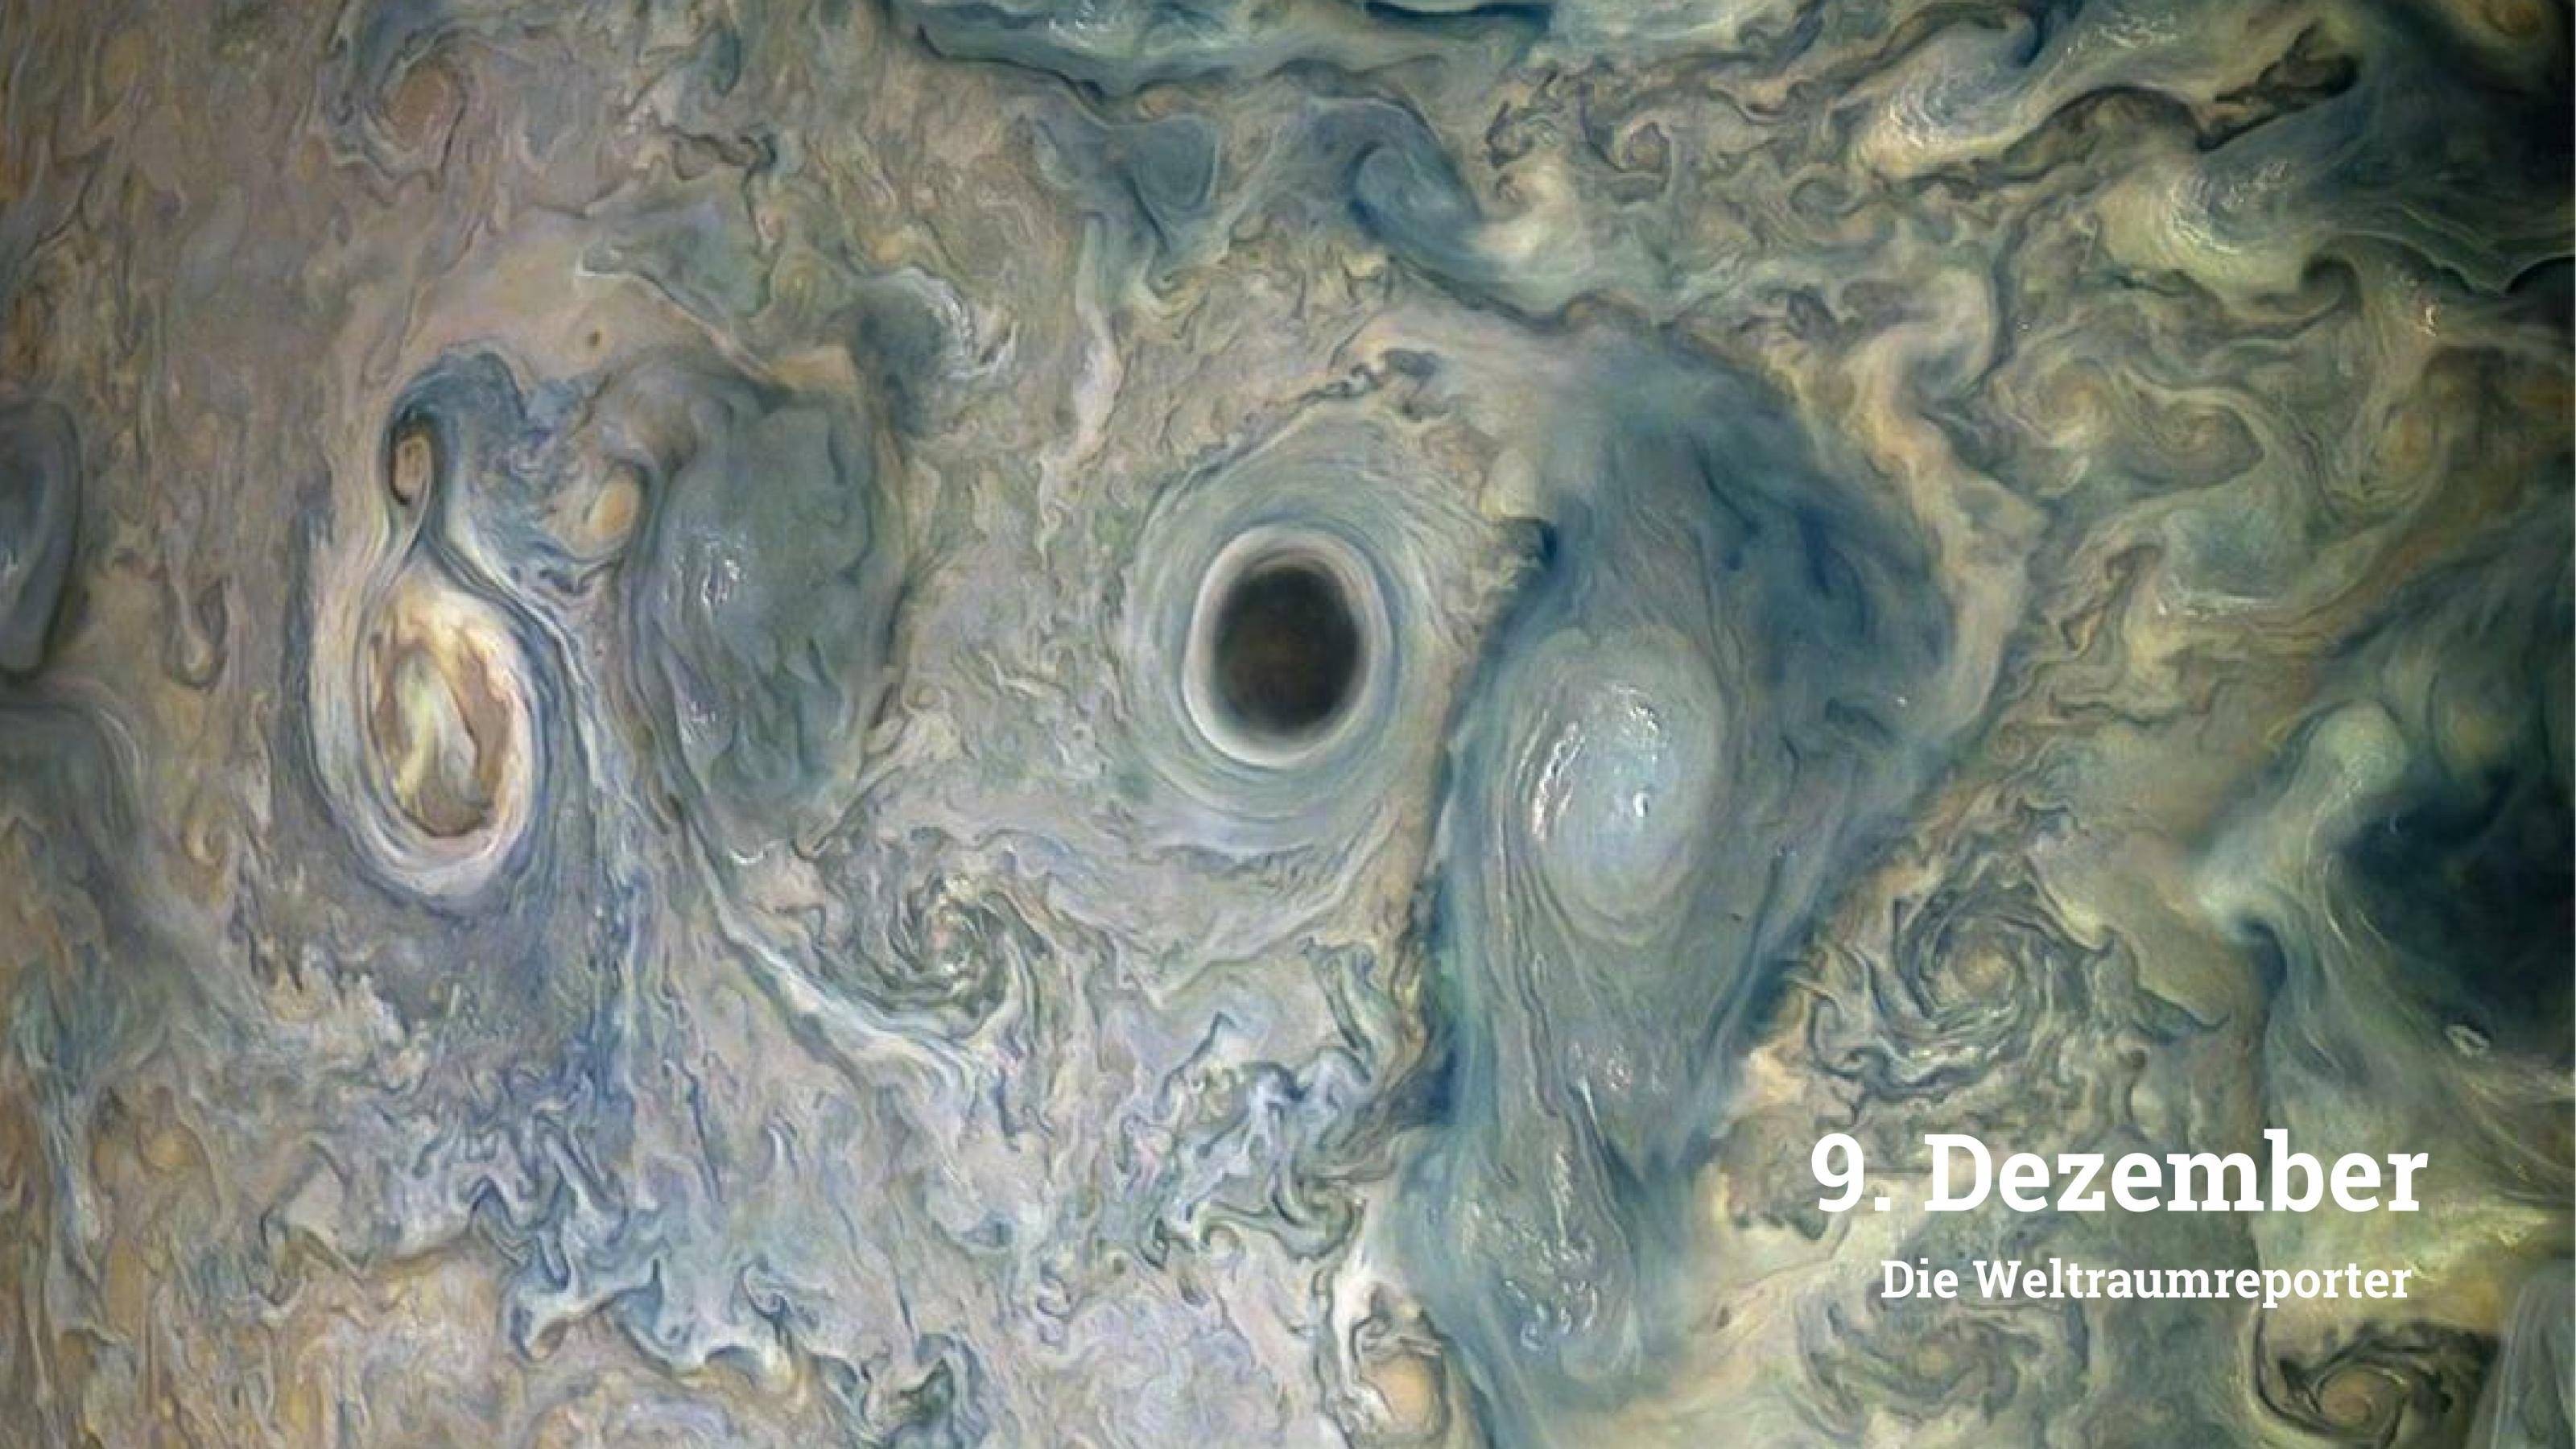 Bräunlich-grüne Wolken in der Jupiteratmosphäre haben sich zu einem mäandernden Mustser formiert. Im Zentrum des Bildes ist ein dunkler Fleck zu sehen, der von einem Wolkenstrudel umgeben ist; rechts und links davon haben sich weitere Wirbel ausgebildet.